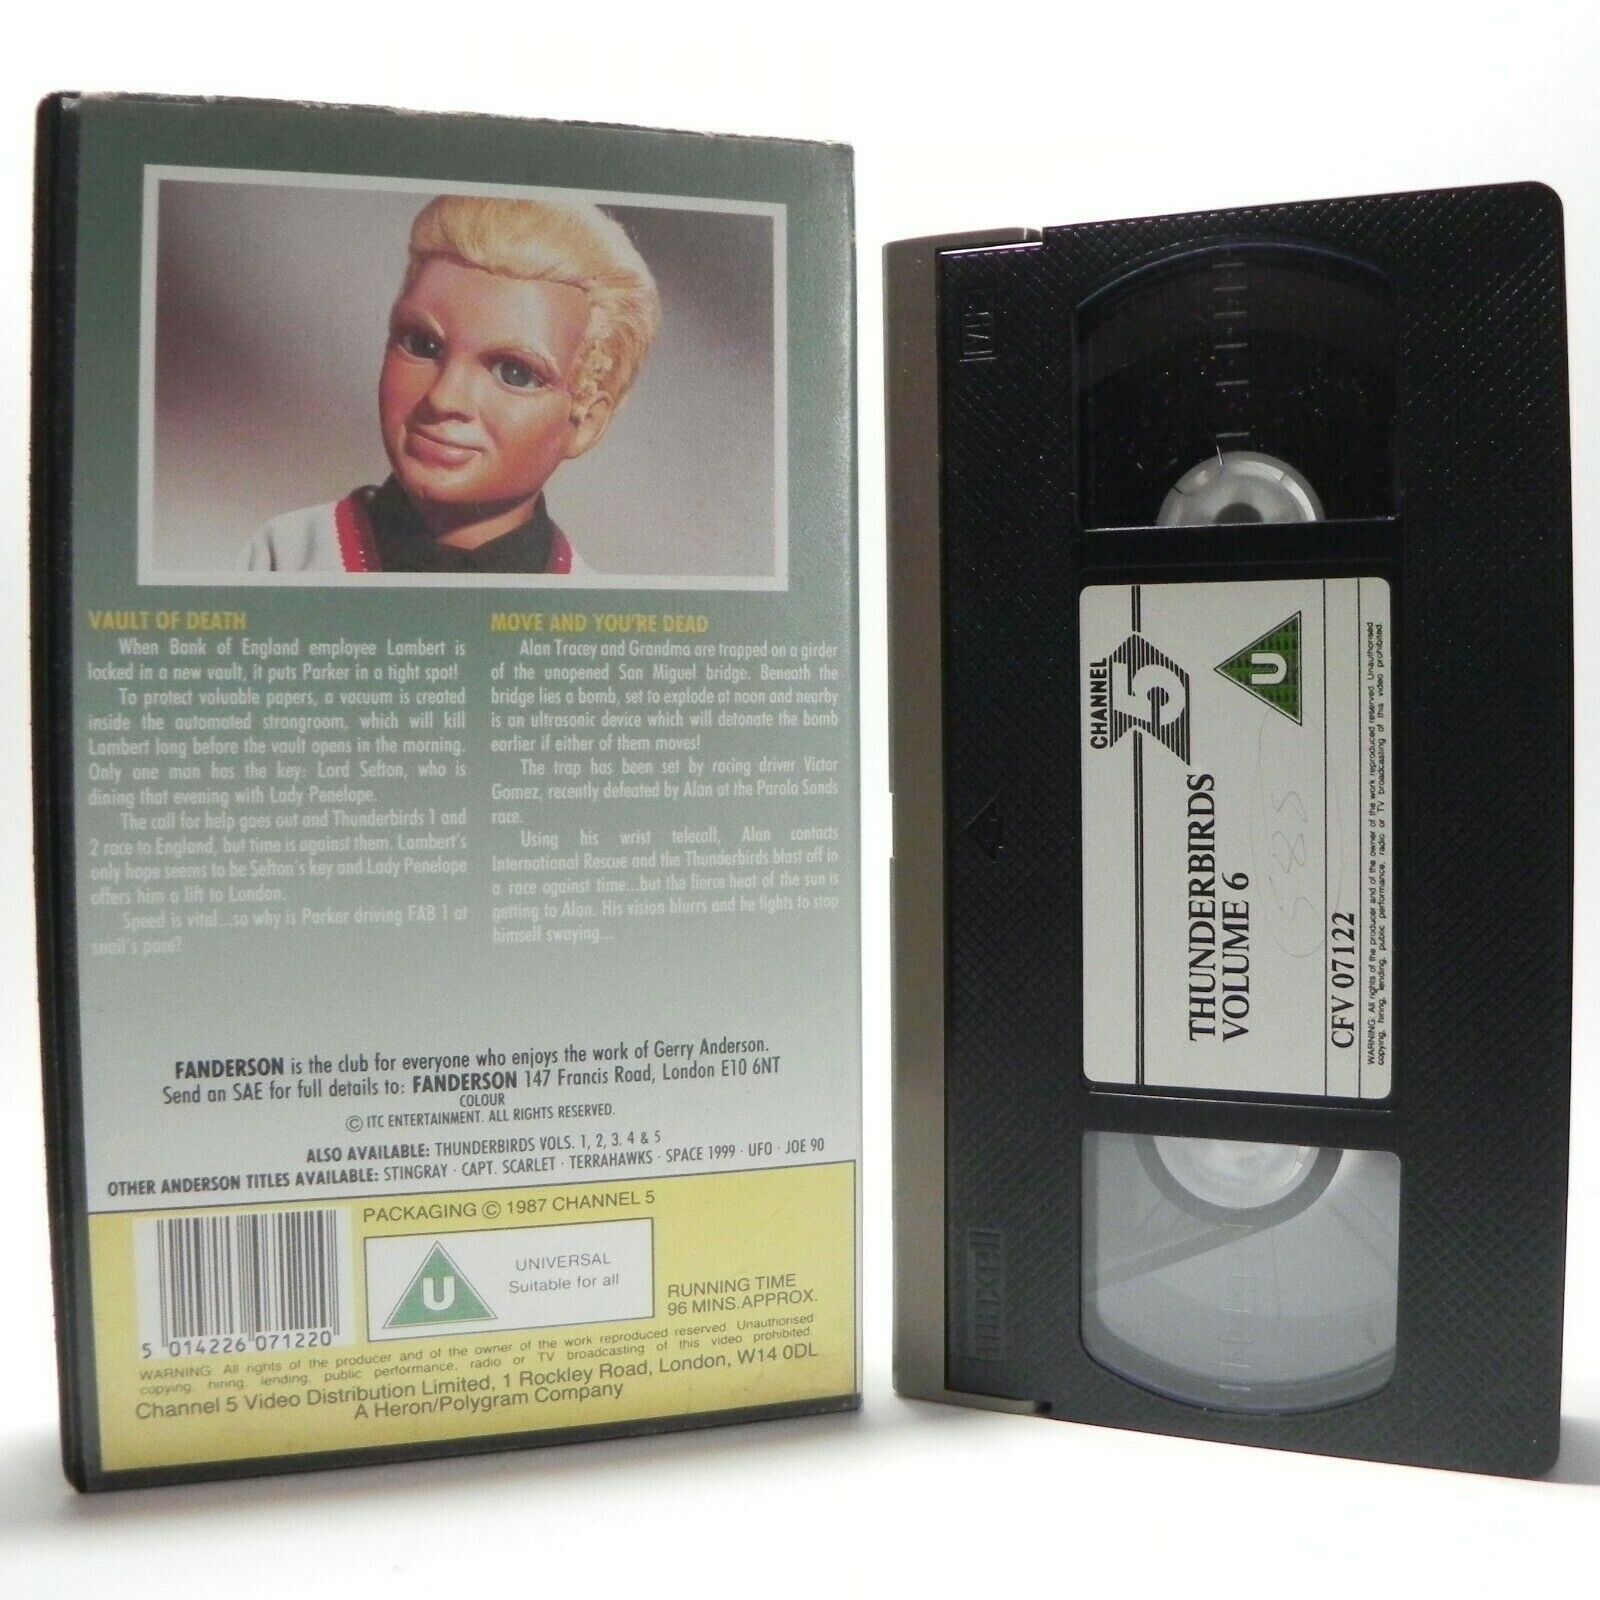 Thunderbirds - Vol.6 - Vault Of Death - Action Adventure - Fantasy - Kids - VHS-